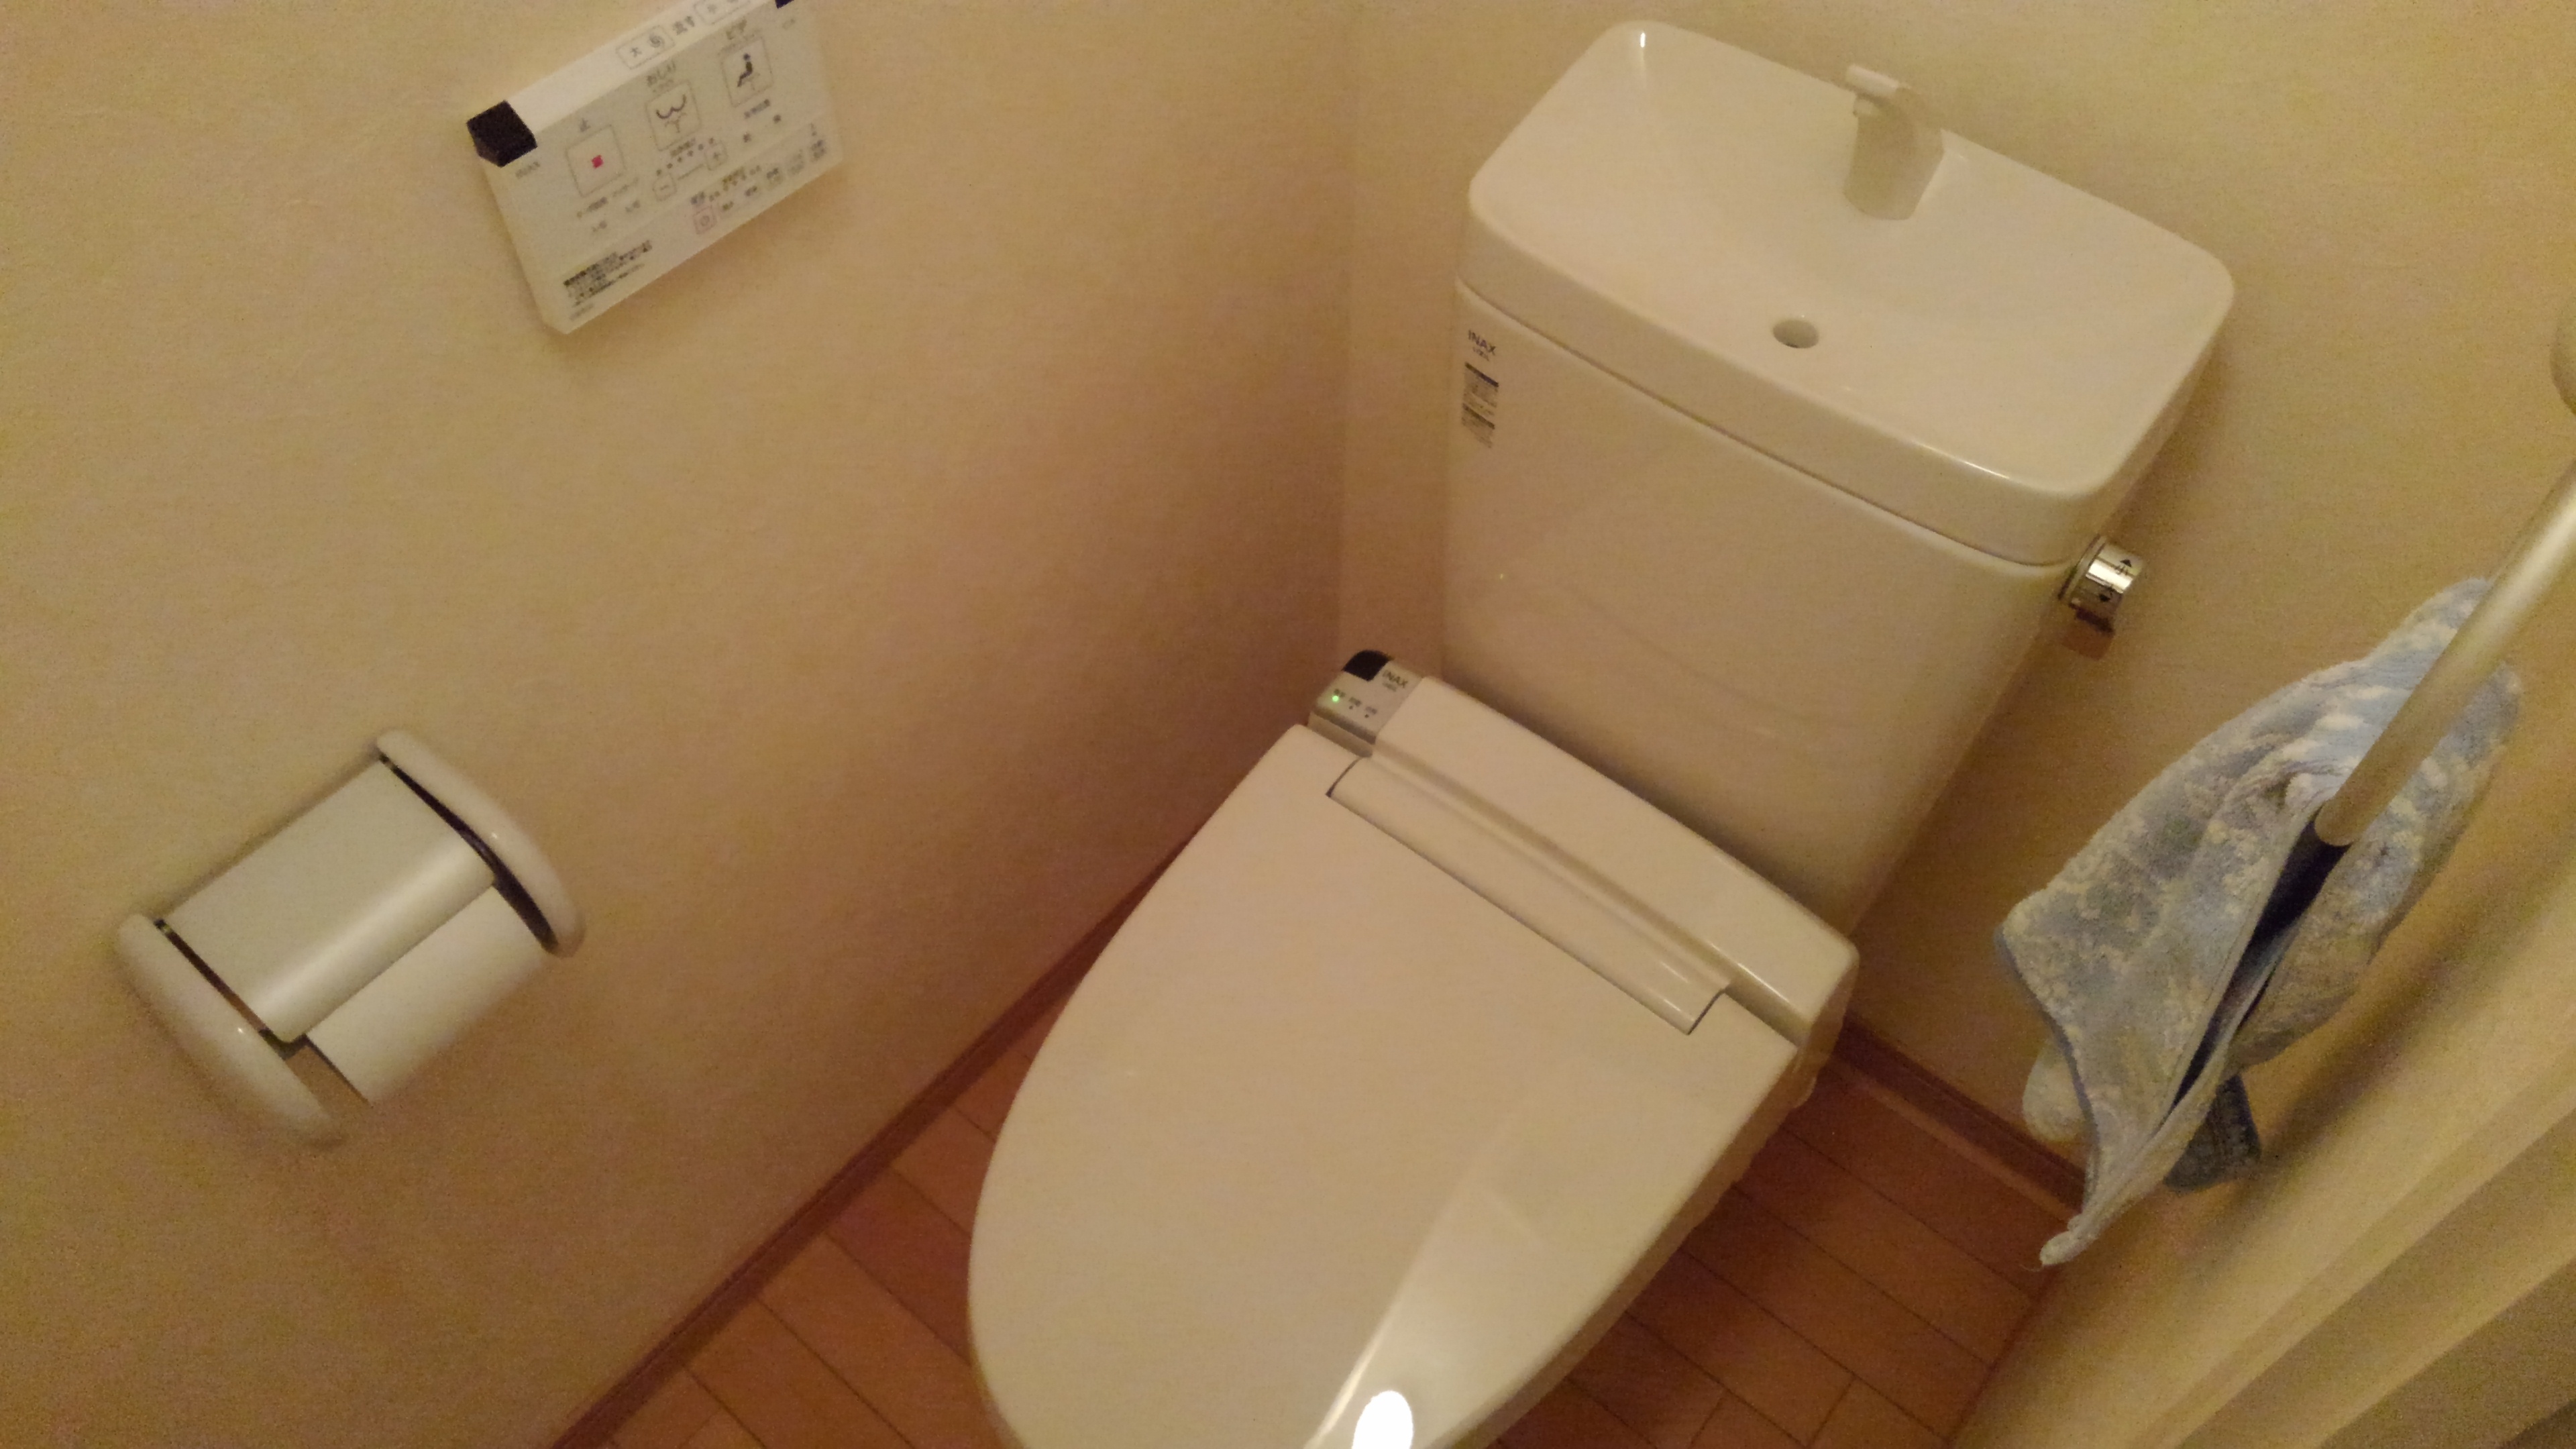 大阪市天王寺区　賃貸マンションの洋式トイレ取替リフォーム工事